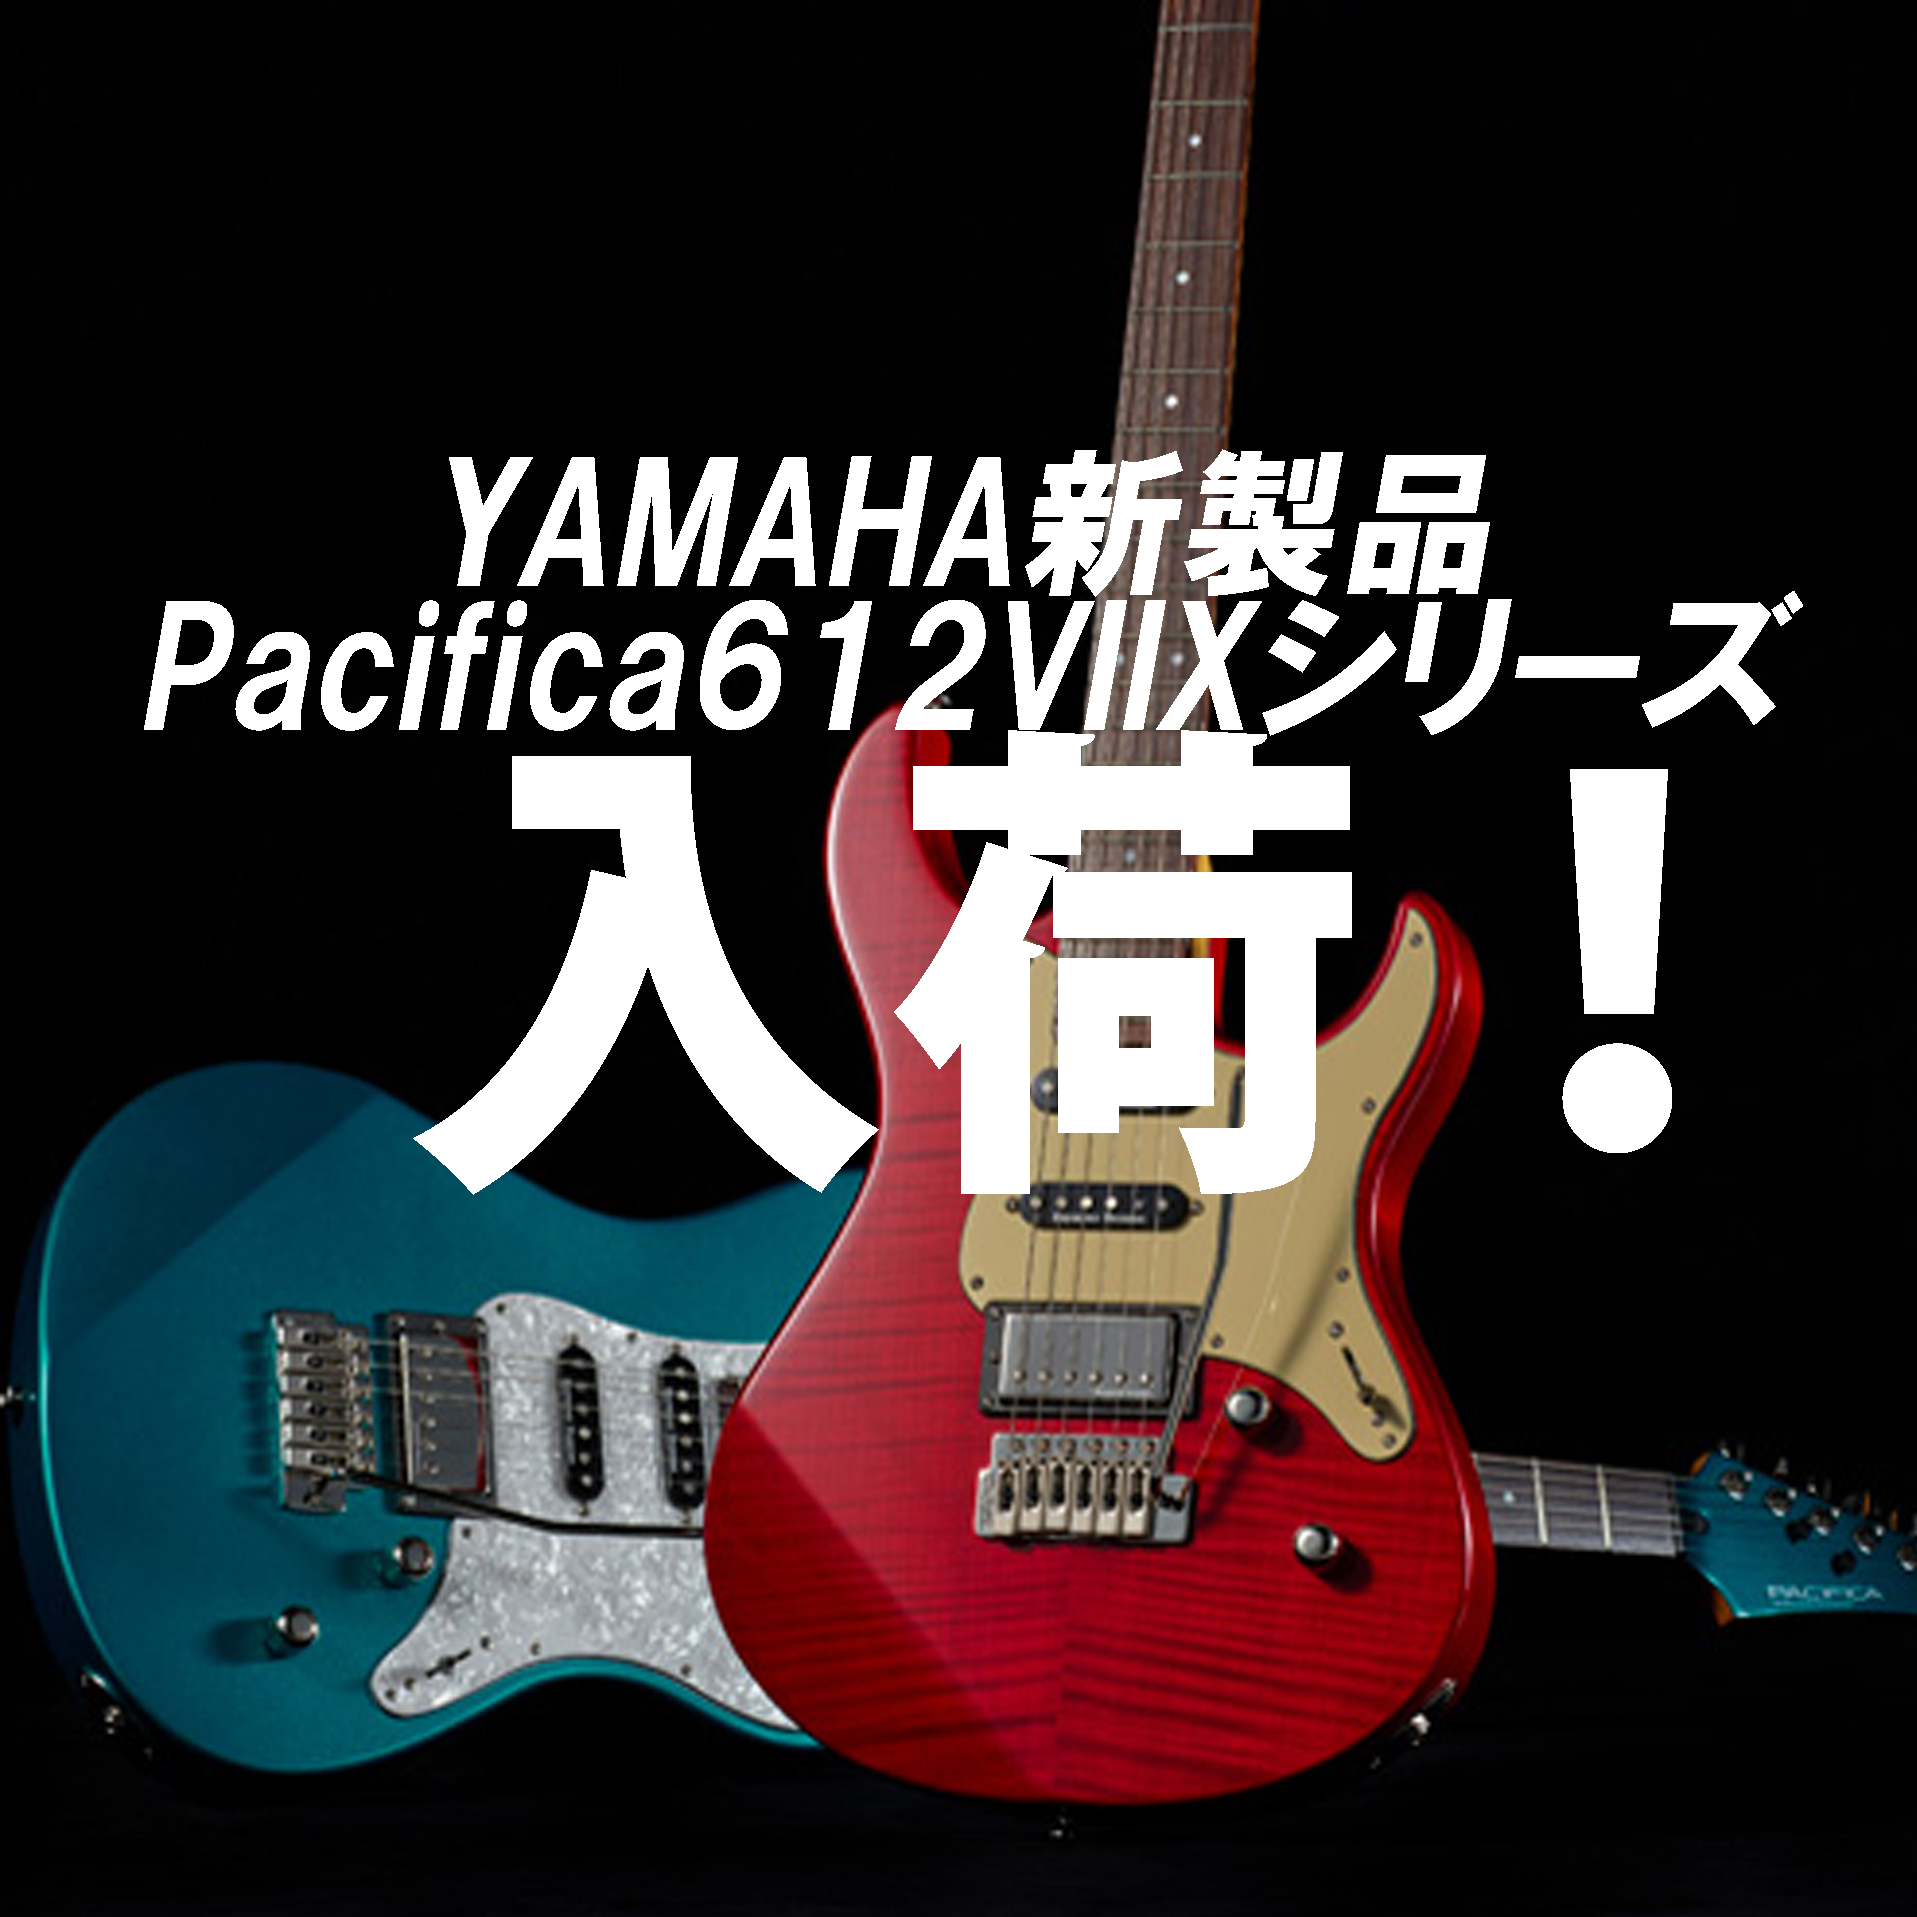 【再入荷情報】新製品PACIFICA612VⅡXシリーズ